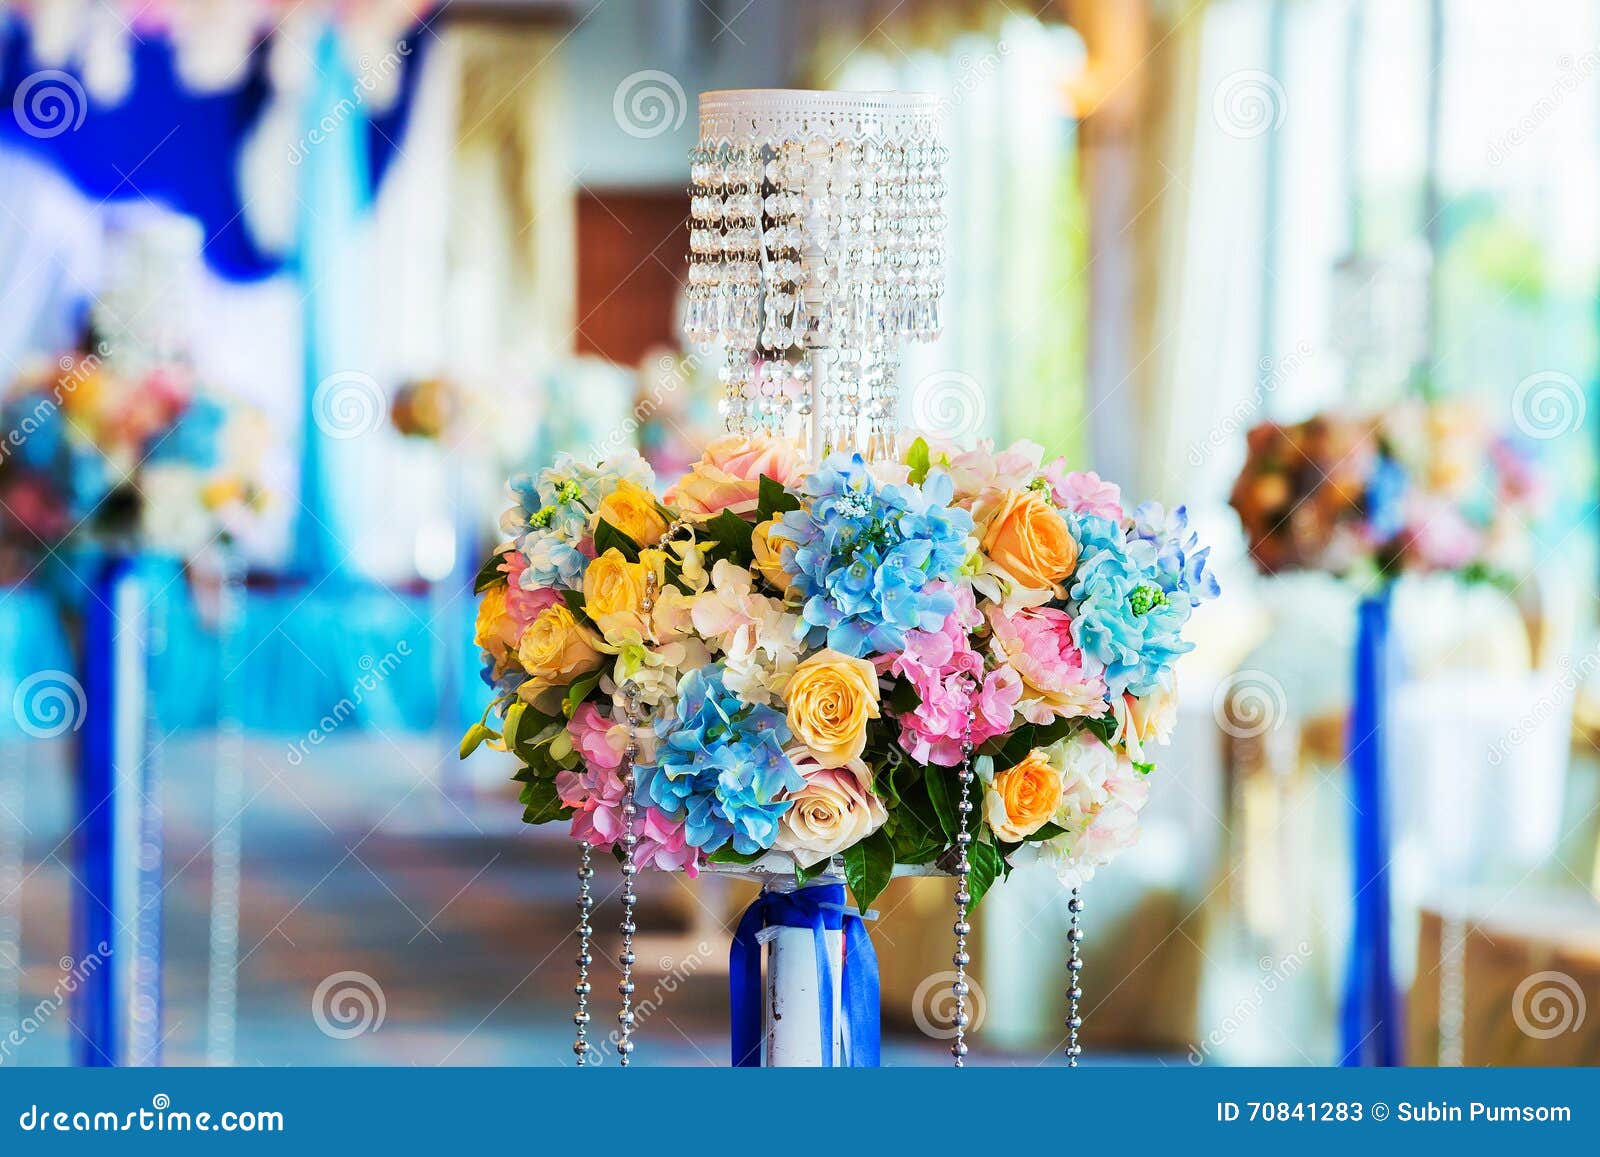 Wedding, event decor stock image. Image of decorate, celebration - 70841283